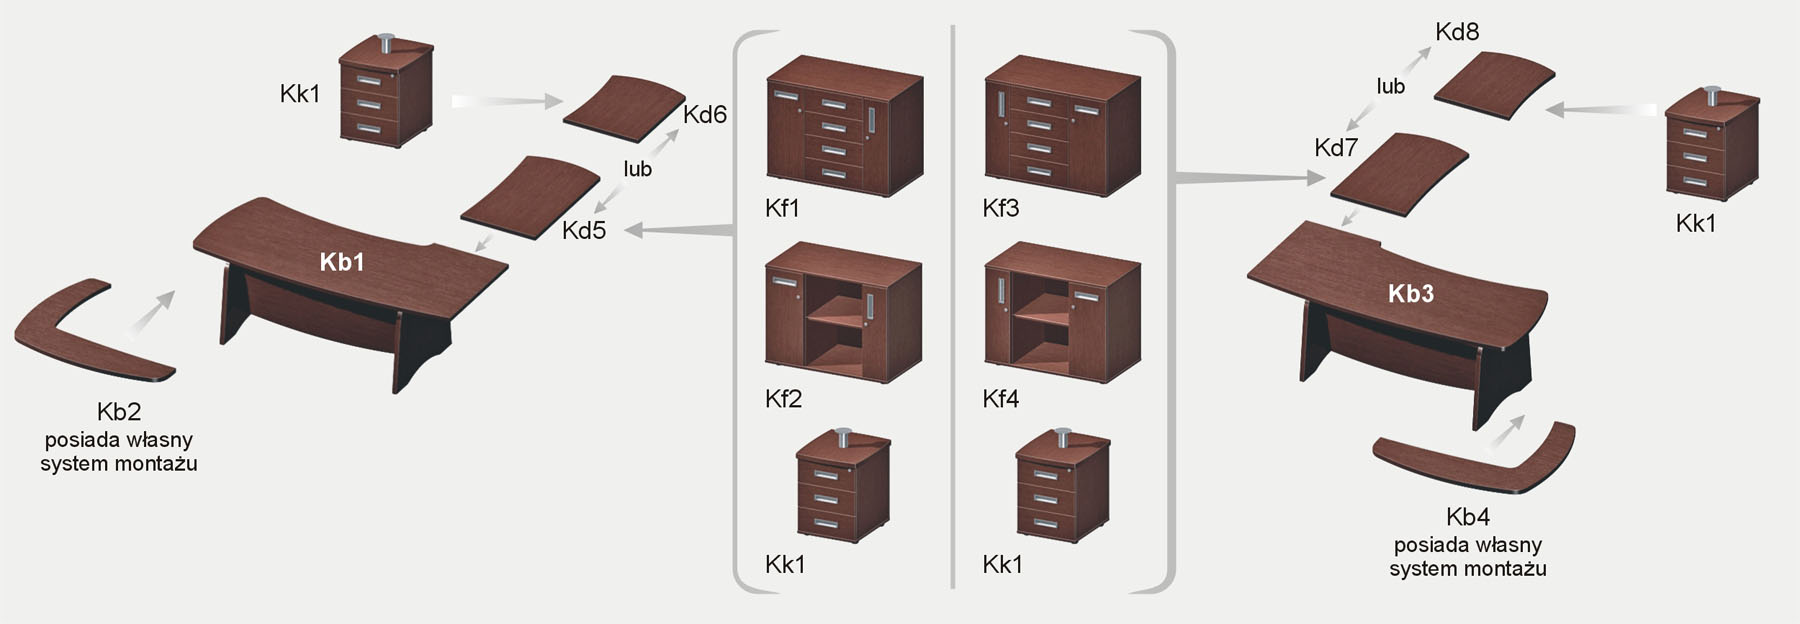 biurka gabinetowe Kb1 i Kb3 - konfiguracja